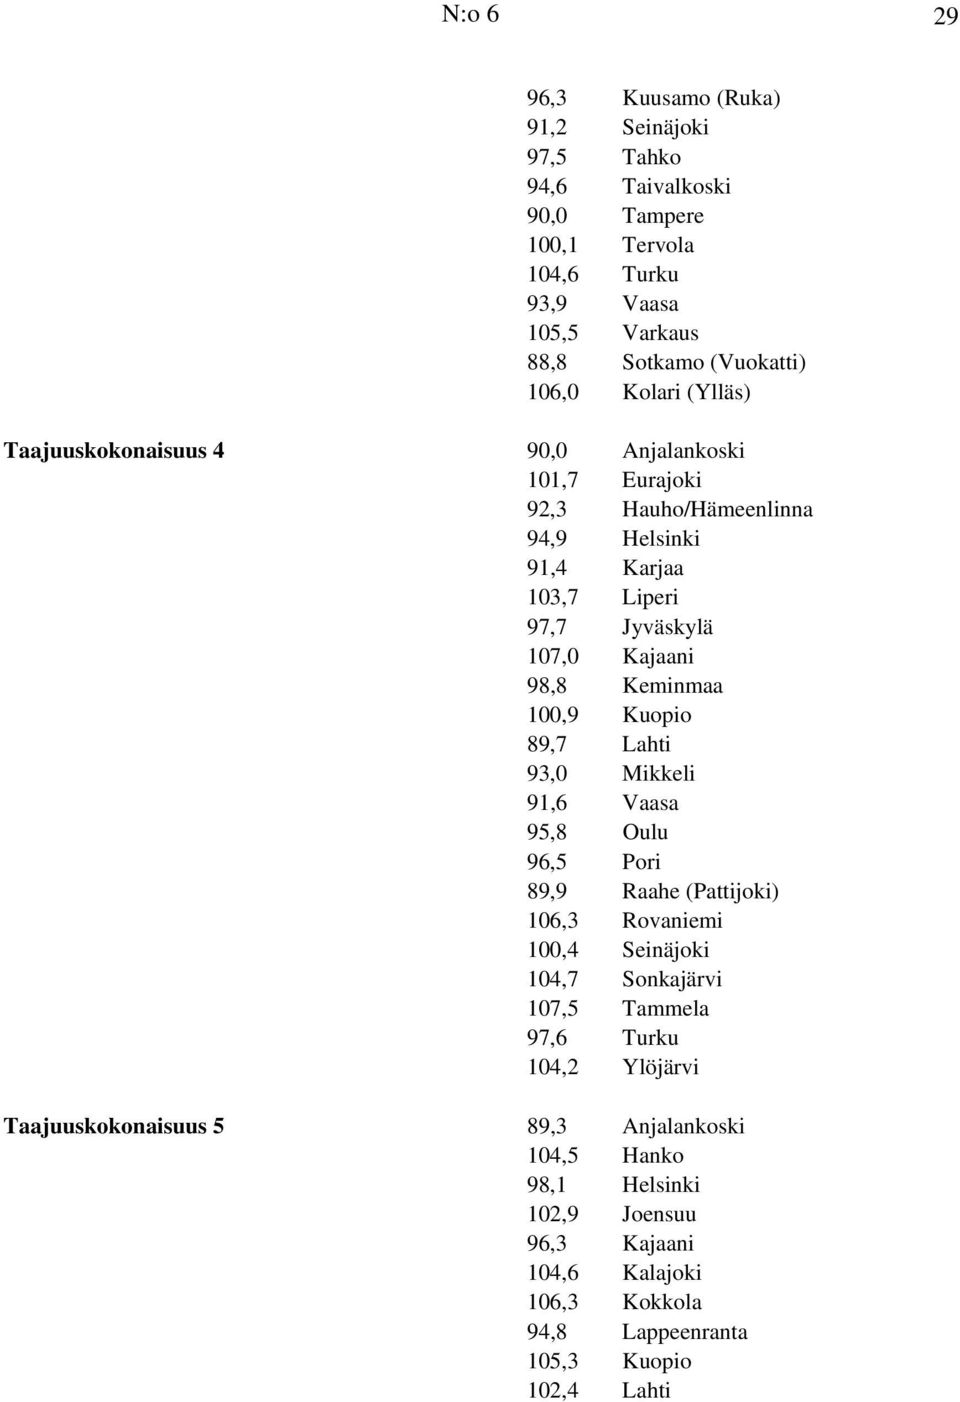 Keminmaa 100,9 Kuopio 89,7 Lahti 93,0 Mikkeli 91,6 Vaasa 95,8 Oulu 96,5 Pori 89,9 Raahe (Pattijoki) 106,3 Rovaniemi 100,4 Seinäjoki 104,7 Sonkajärvi 107,5 Tammela 97,6